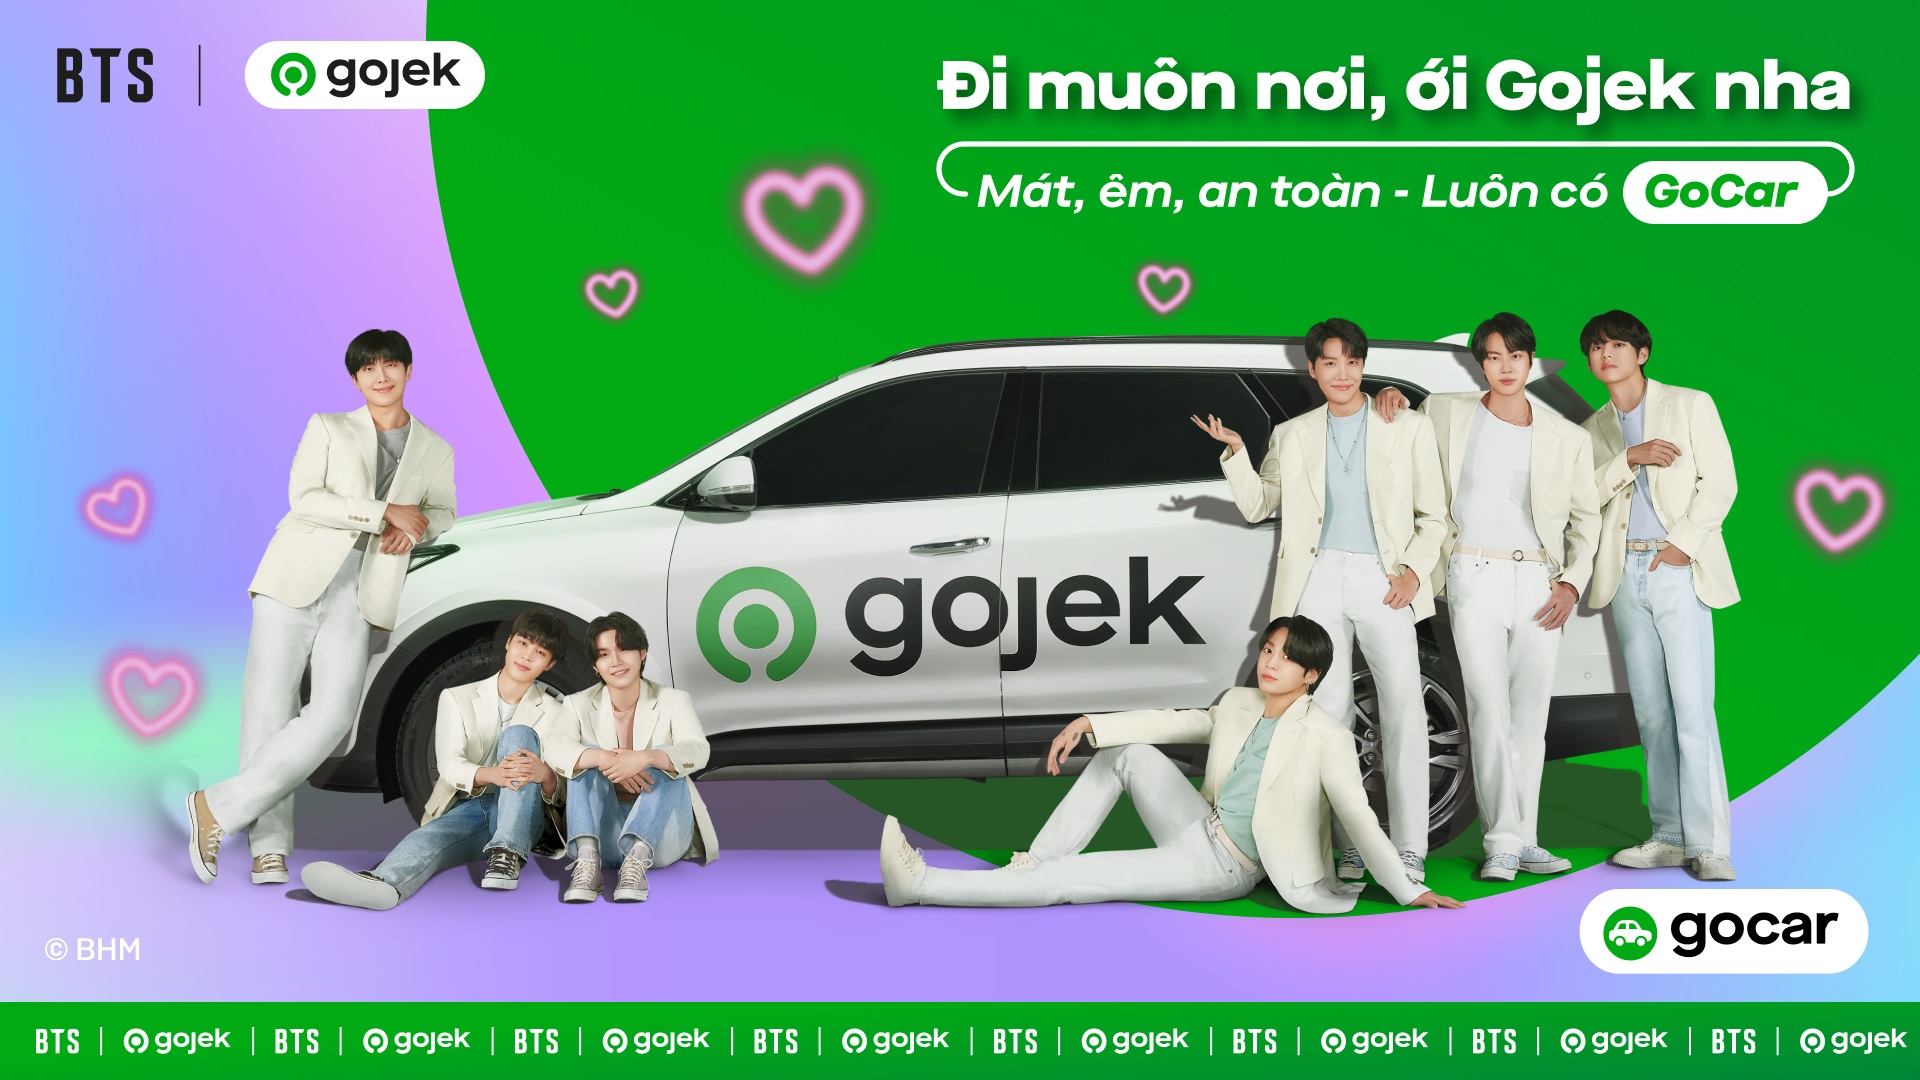 Gojek công bố ra mắt chiến dịch BTS | Gojek tại Việt Nam